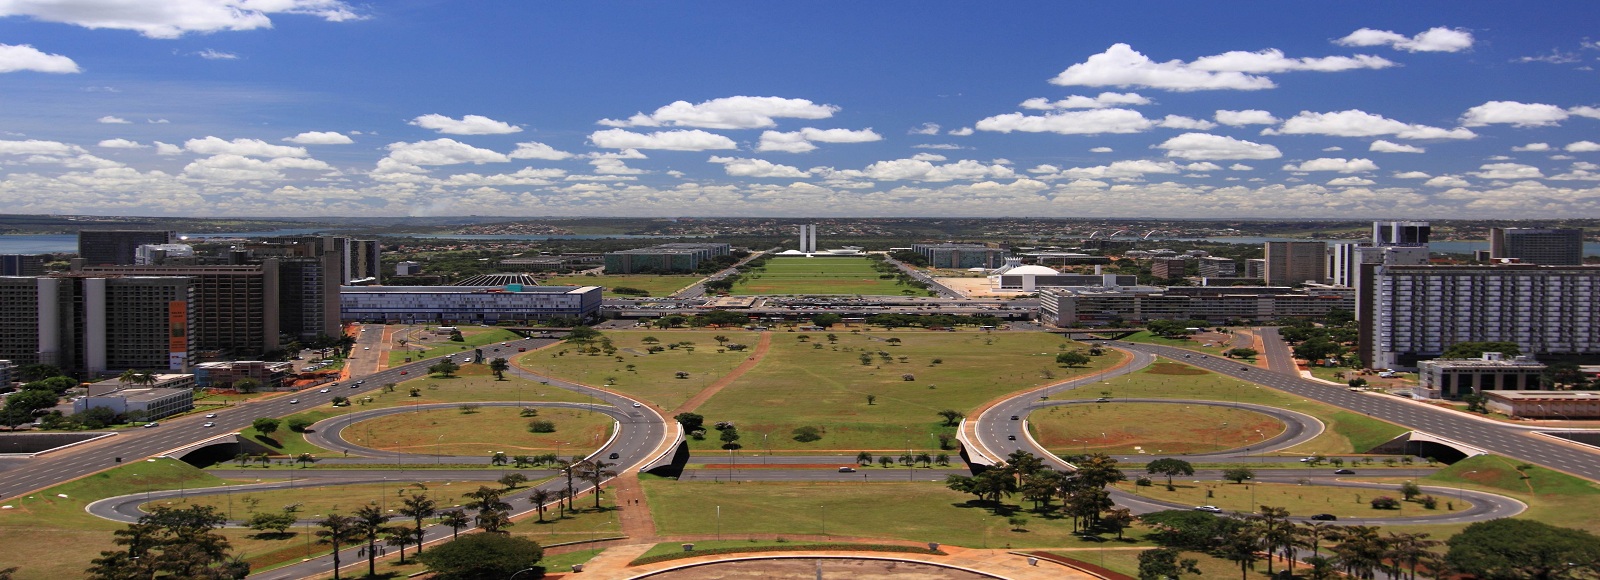 Ofertas de Traslados en Brasília. Traslados económicos en Brasília 